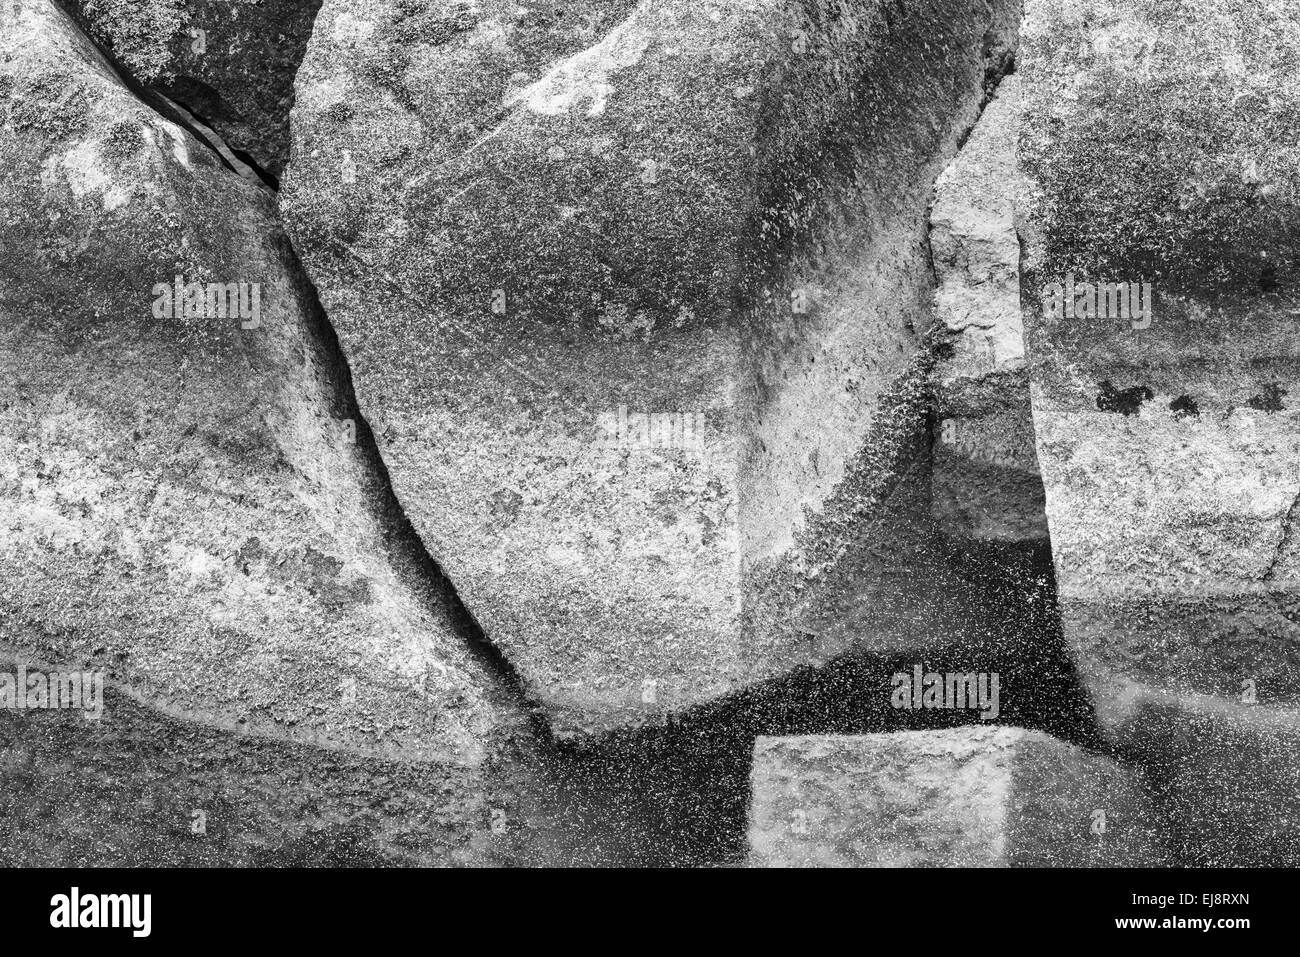 stones in a lake, Kebnekaise mountains, Lapland Stock Photo